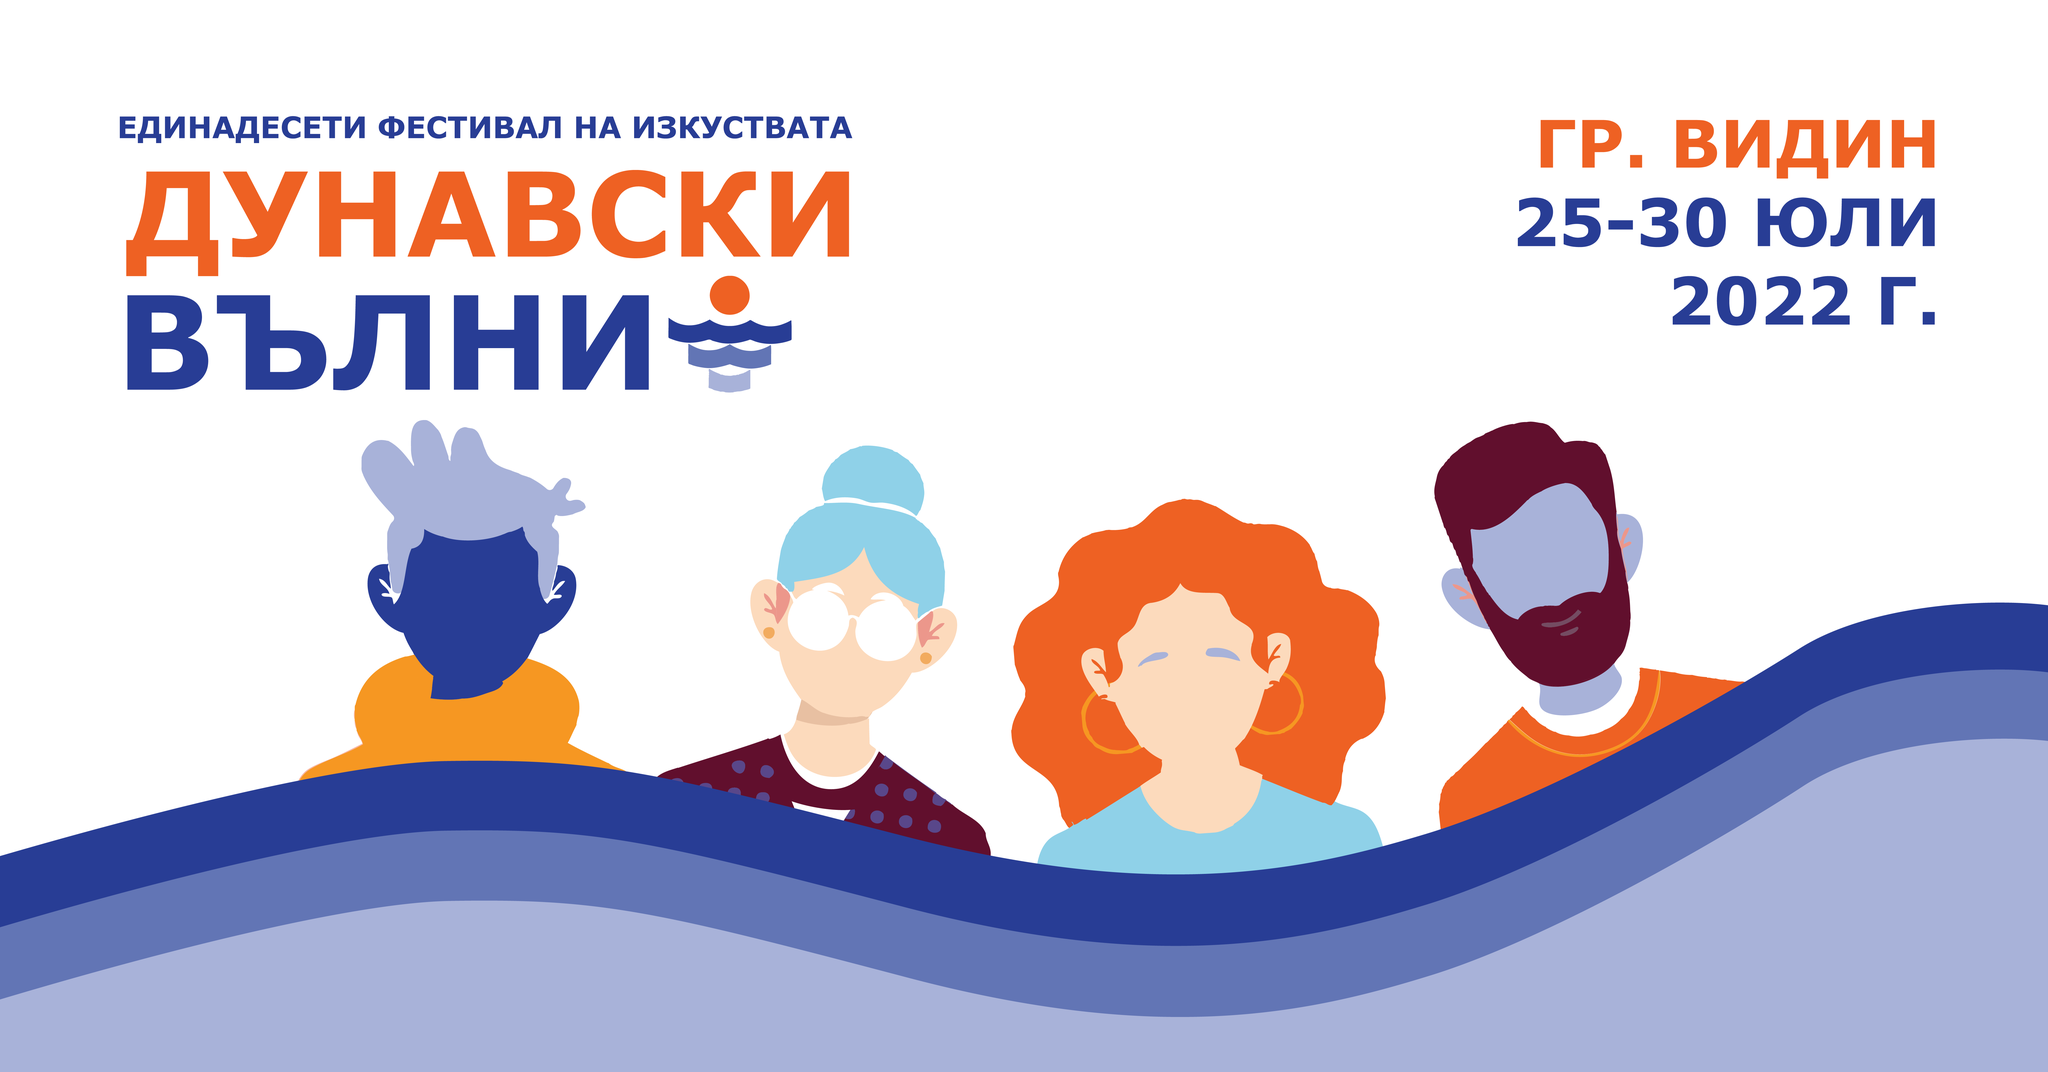 Богата и разнообразна програма предлага фестивалът „Дунавски вълни” във Видин